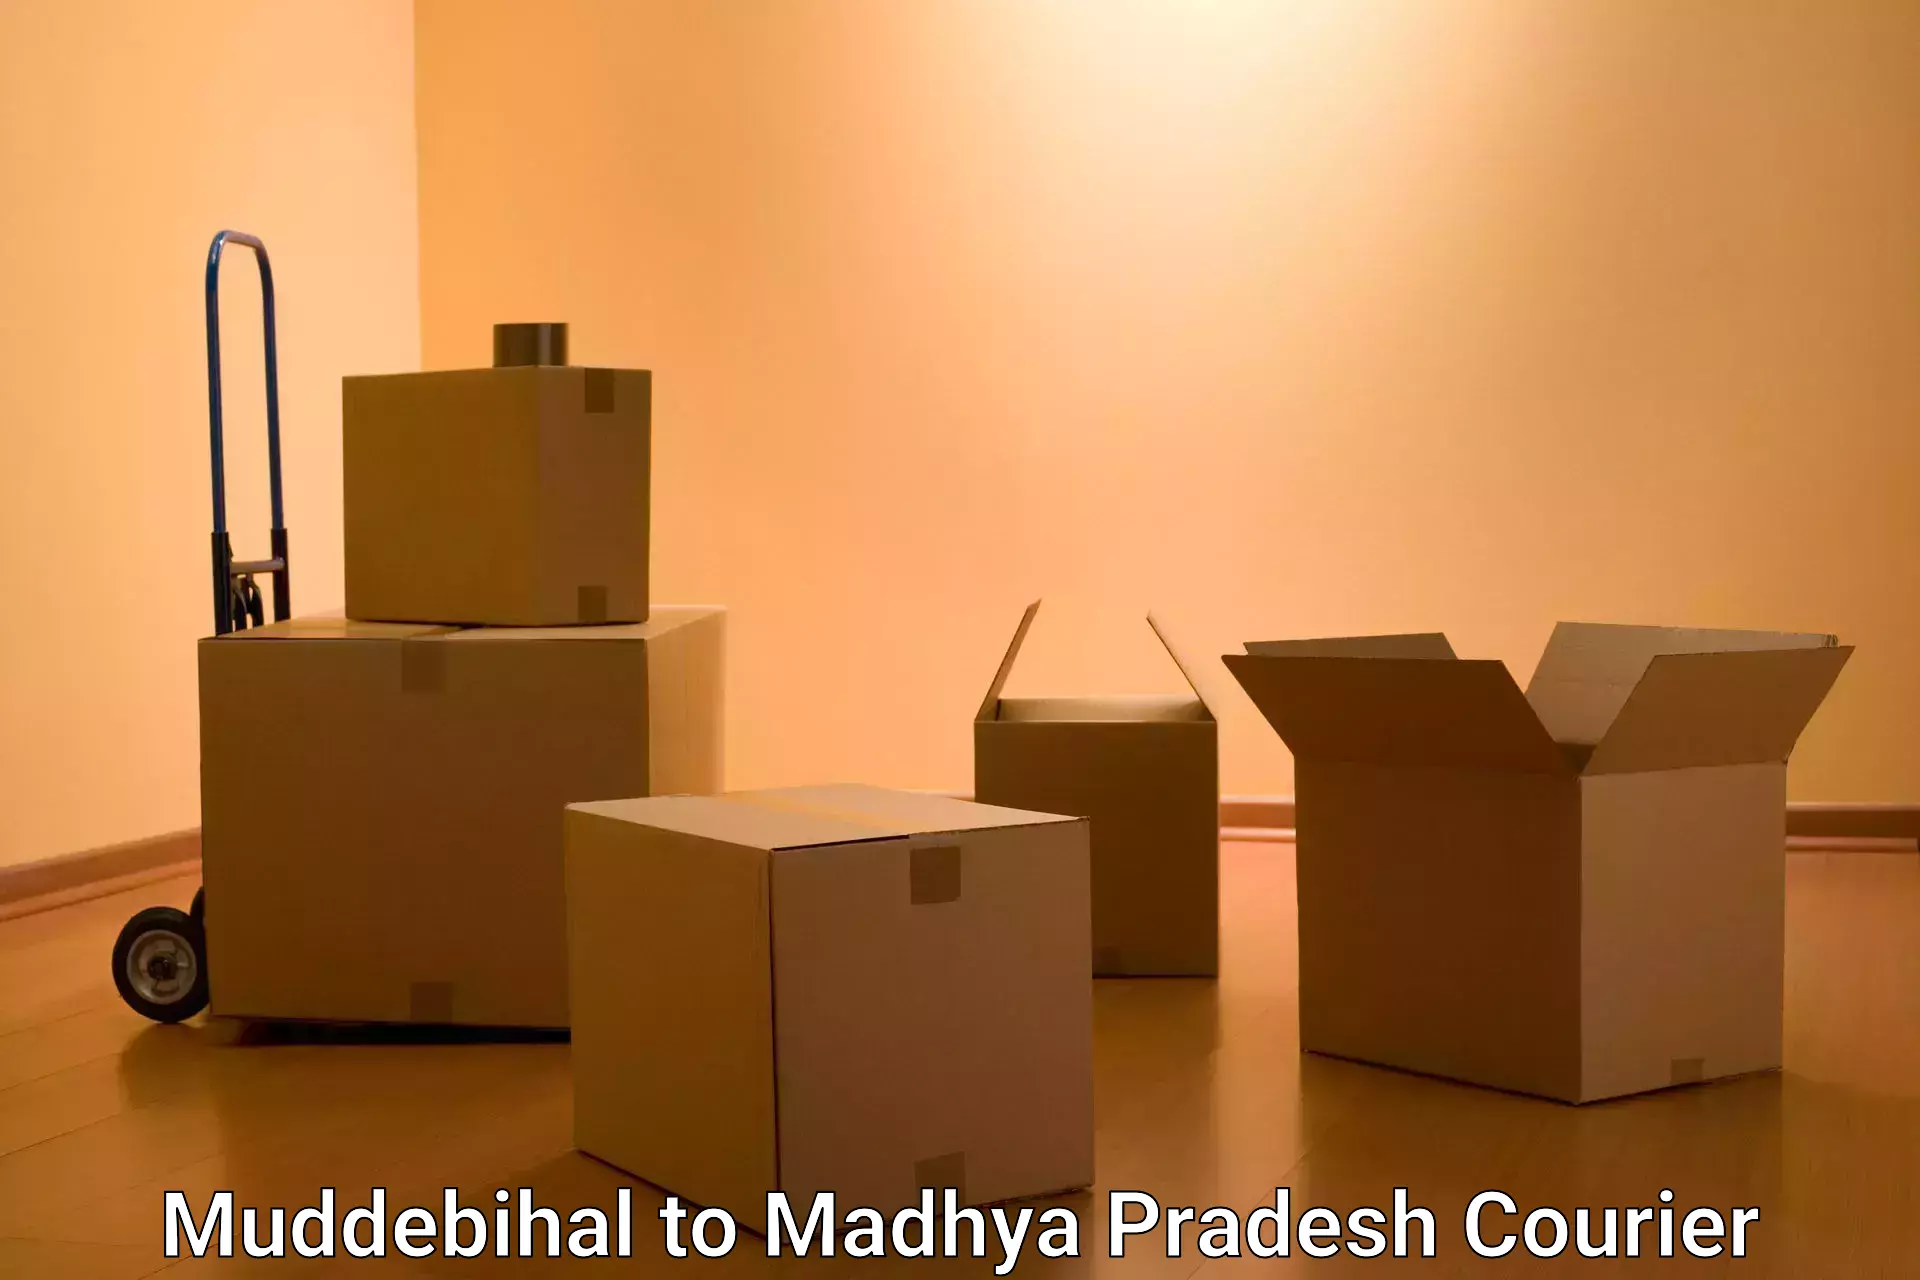 Premium courier solutions Muddebihal to Madhya Pradesh